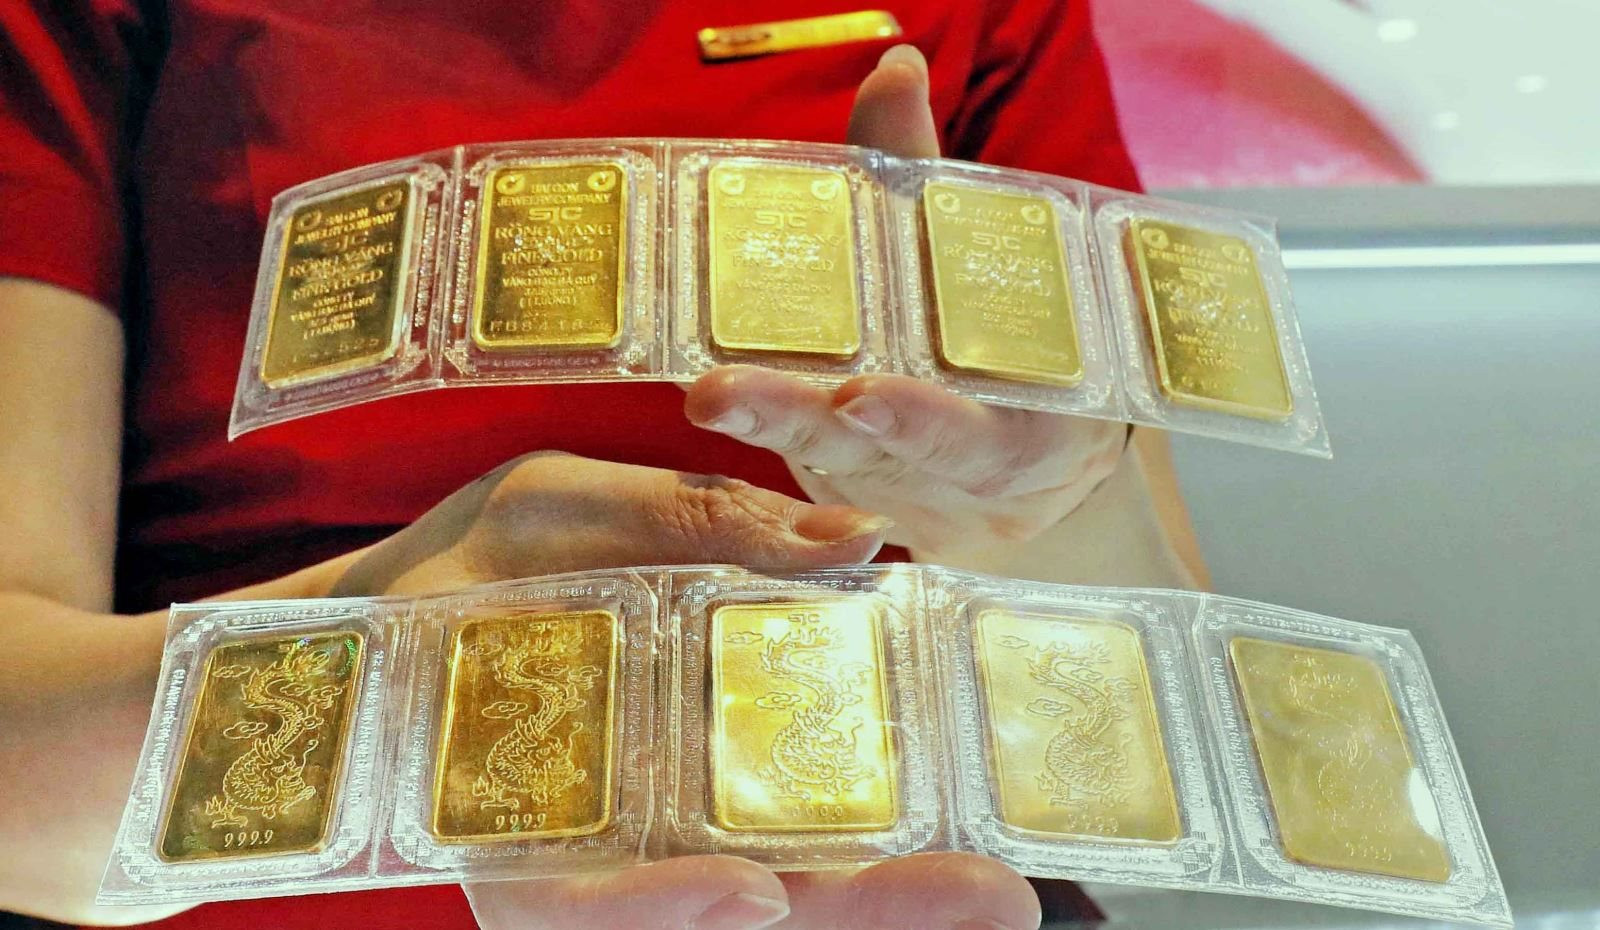 Giá vàng trong nước giảm đến 150.000 đồng/lượng